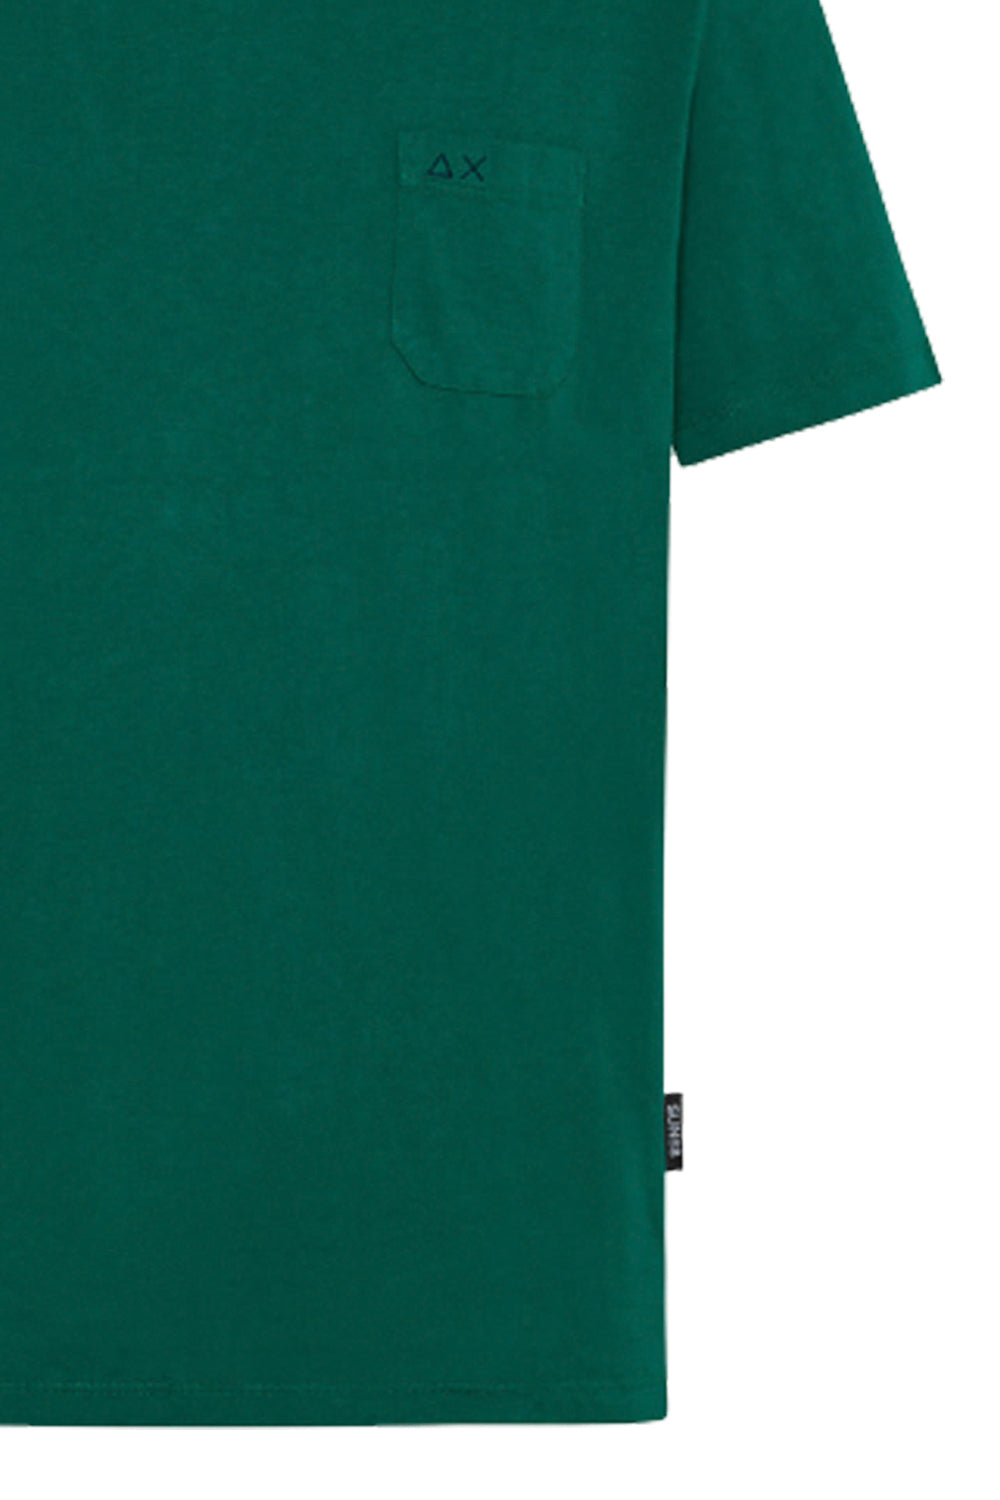 SUN 68 T-shirt in cotone con taschino